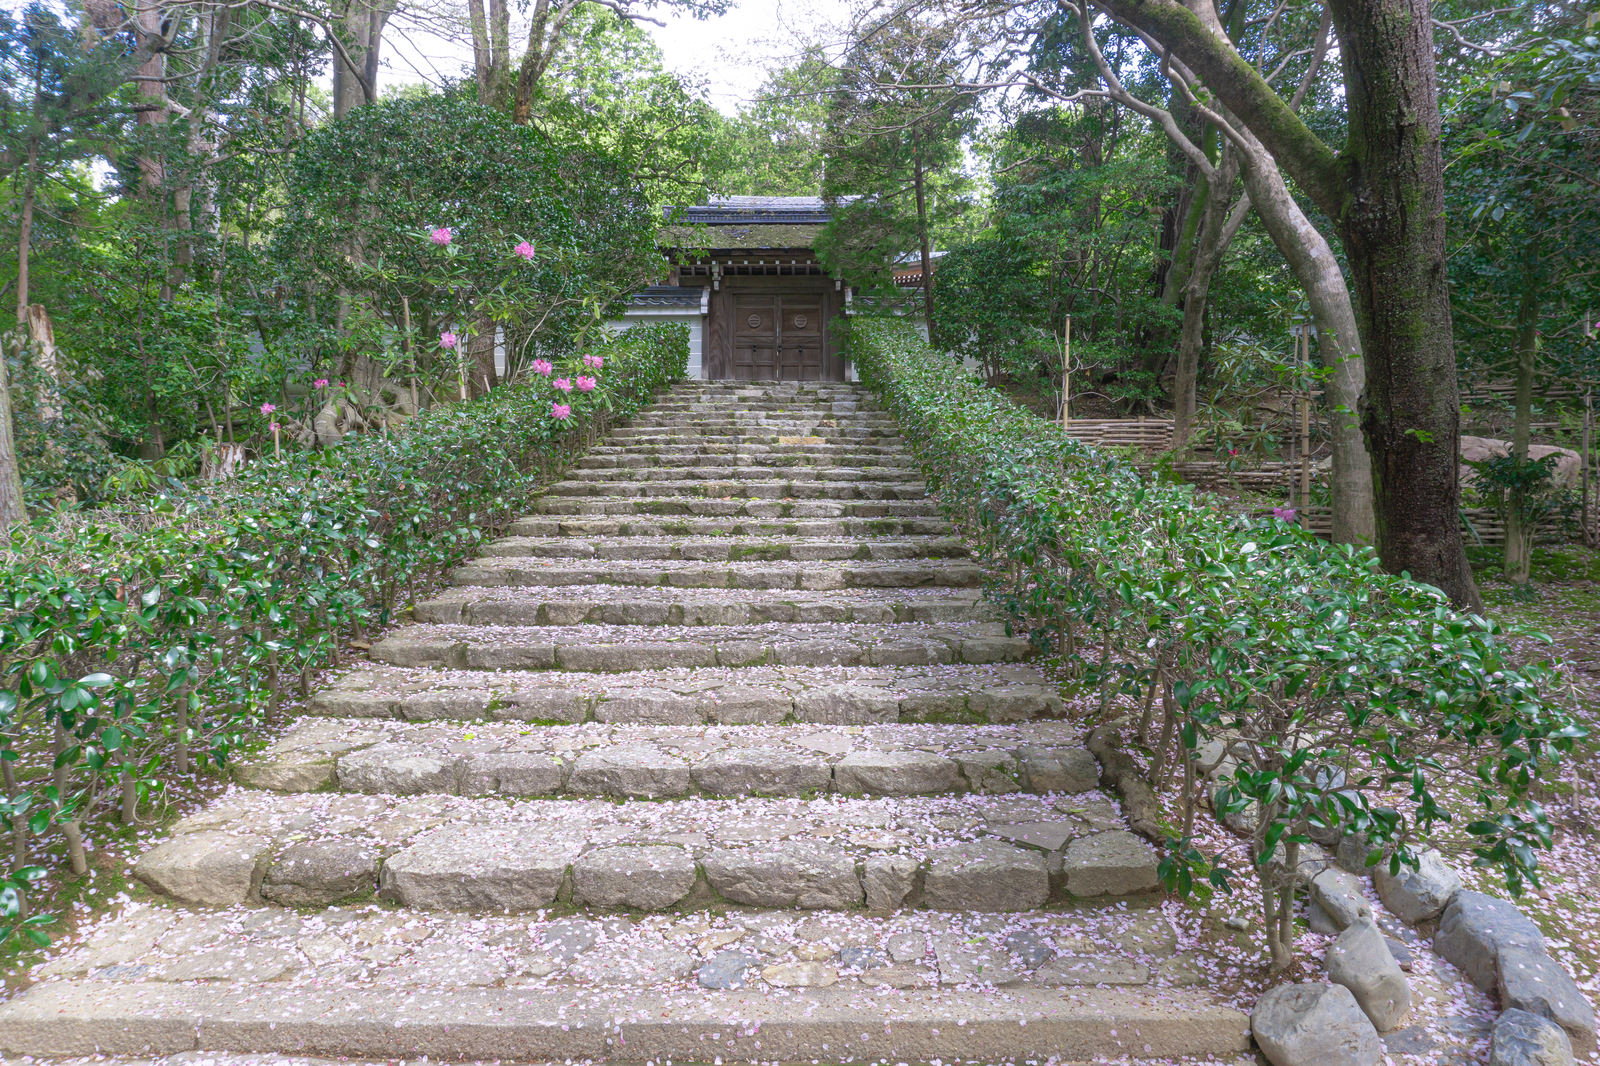 「桜の花びらが散る小さな門へと続く石段 | フリー素材のぱくたそ」の写真